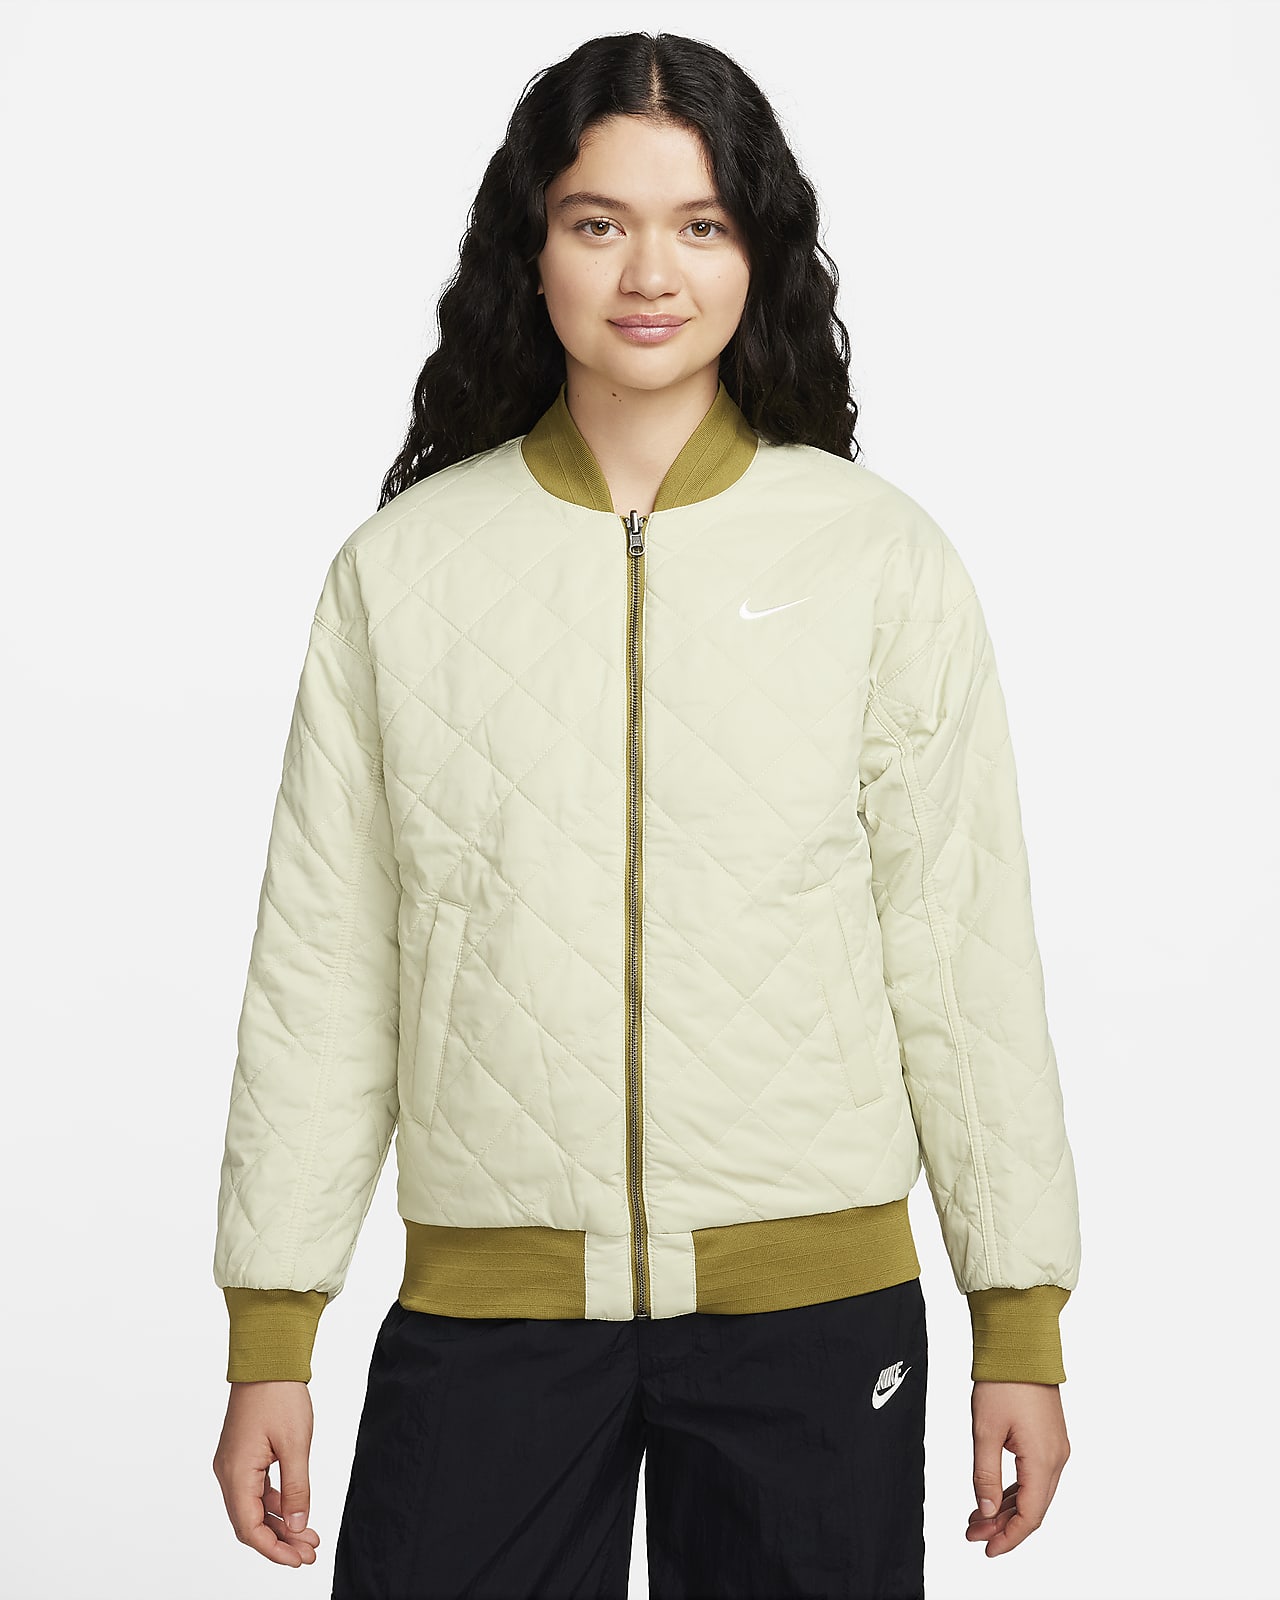 Nike Sportswear Women's Reversible Varsity Bomber Jacket.